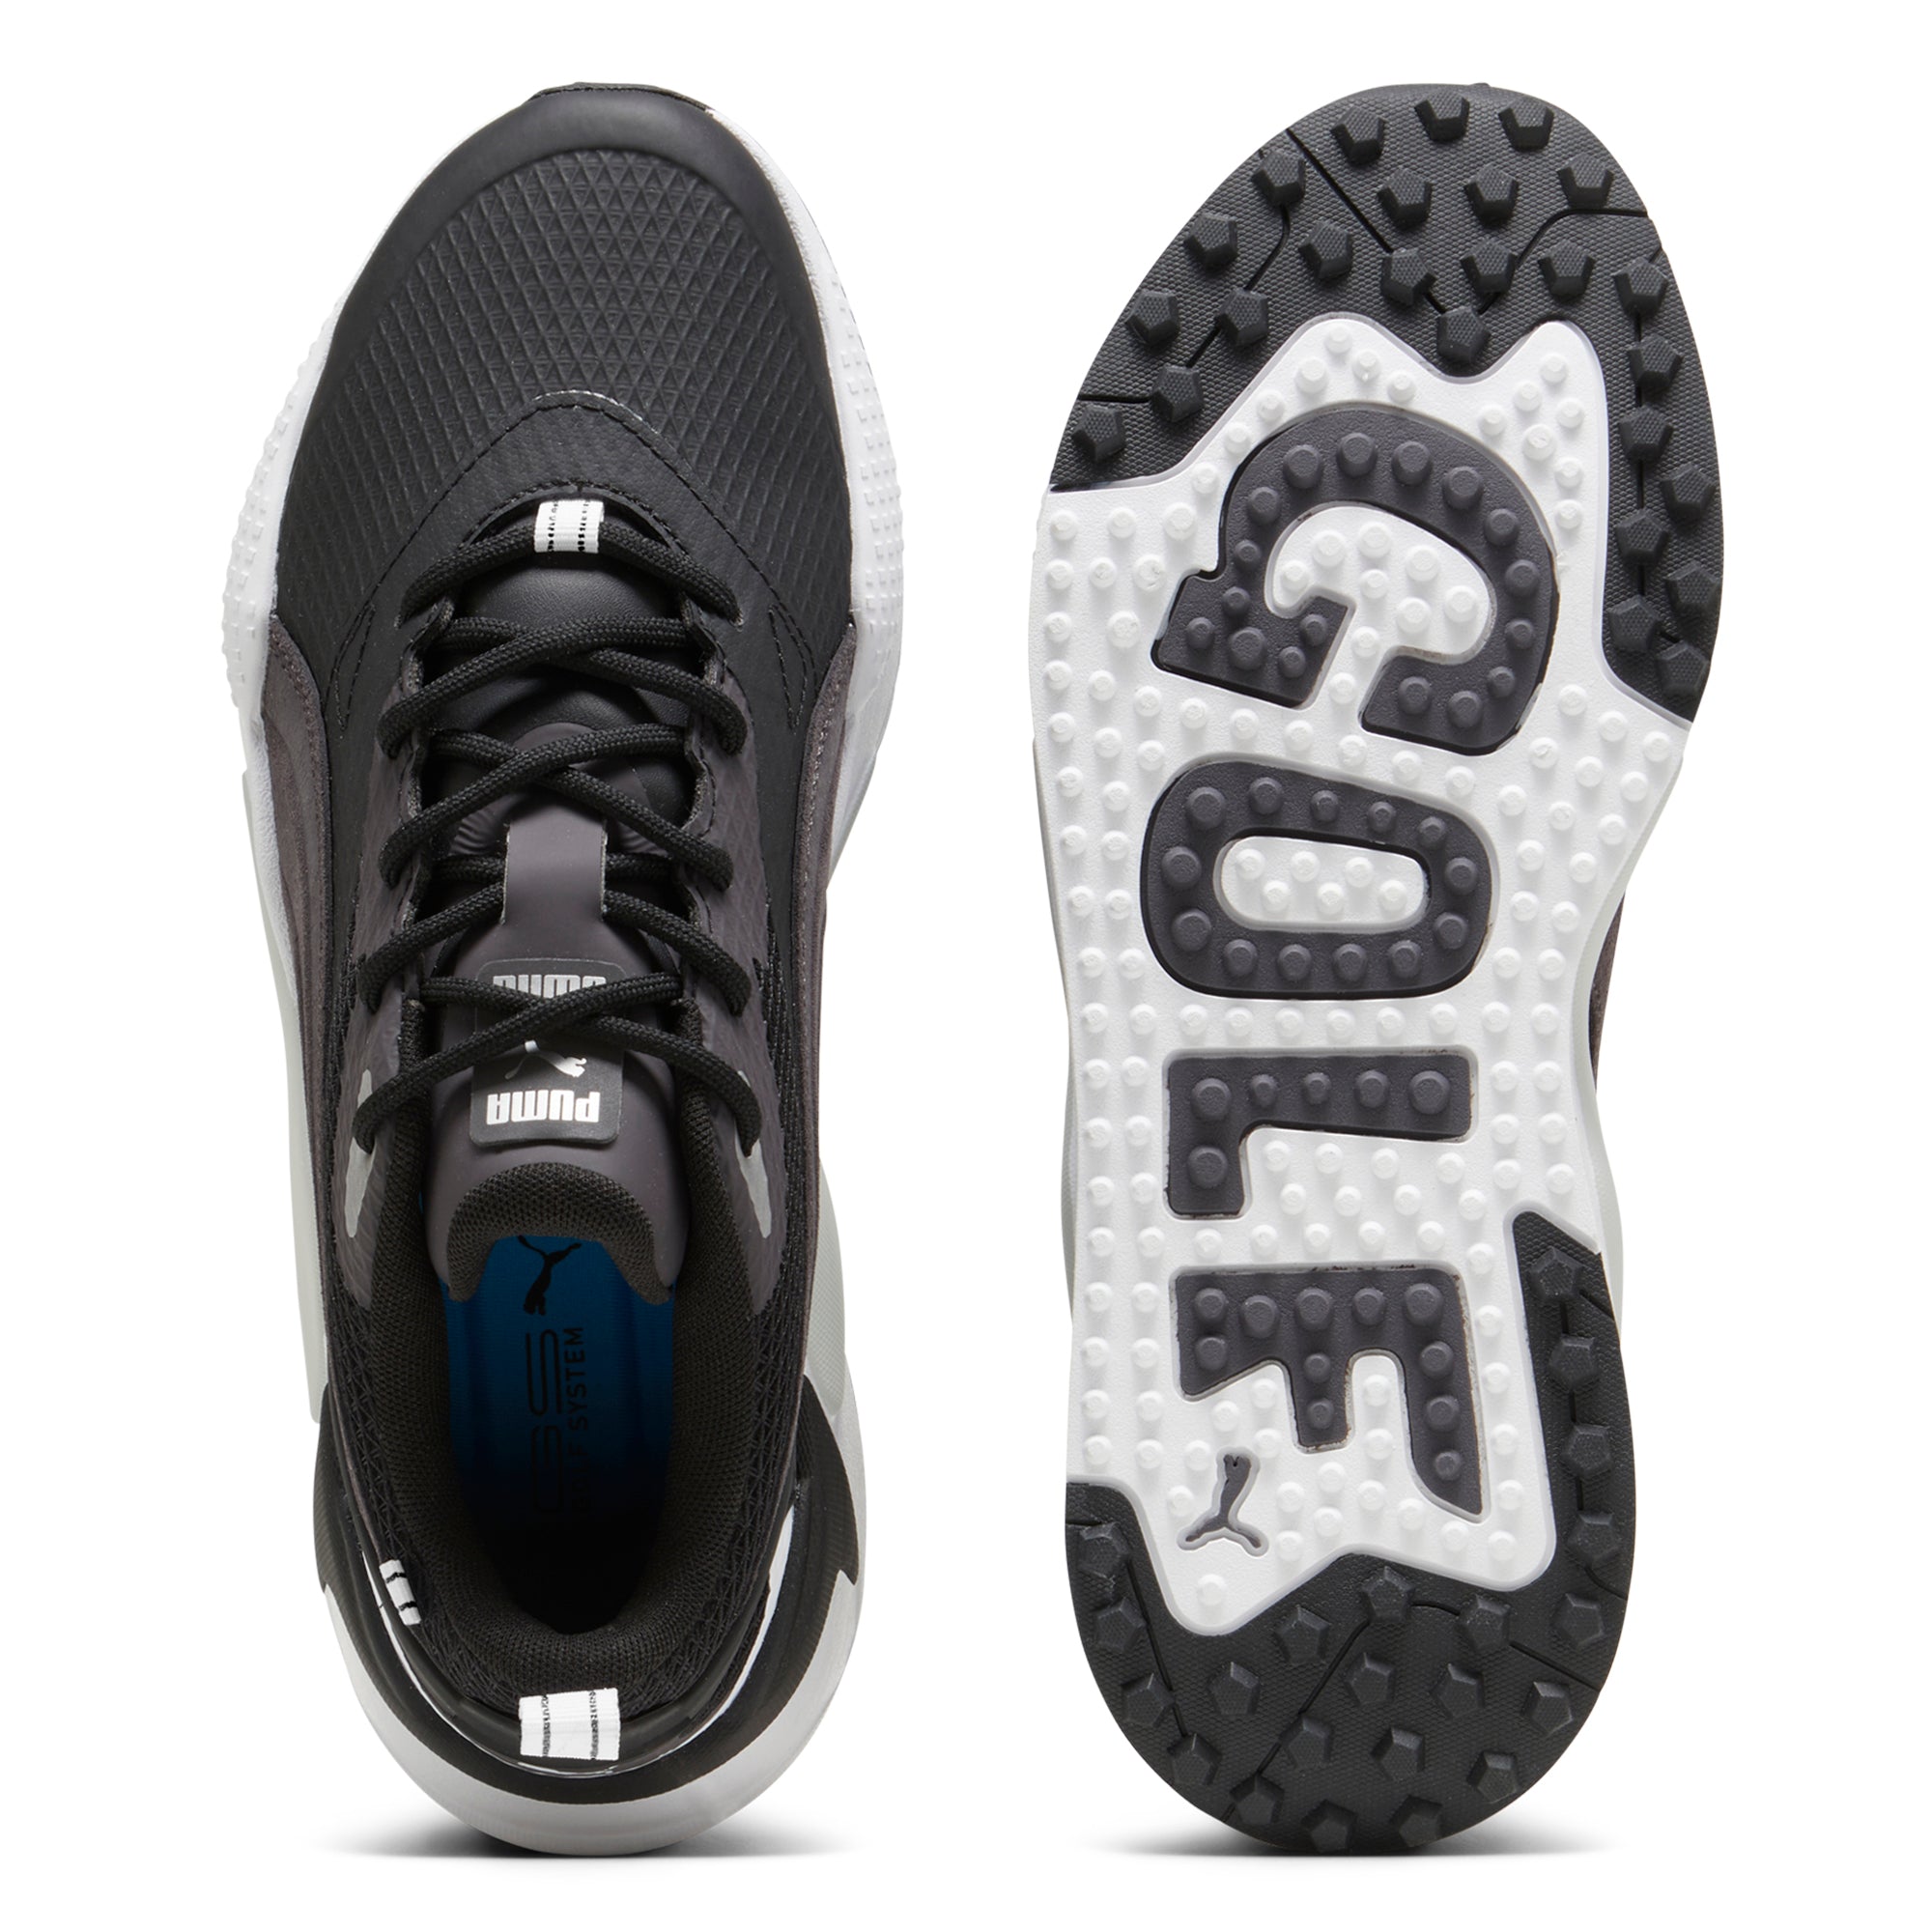 puma-gs-x-efekt-golf-shoes-379207-puma-black-dark-coal-02